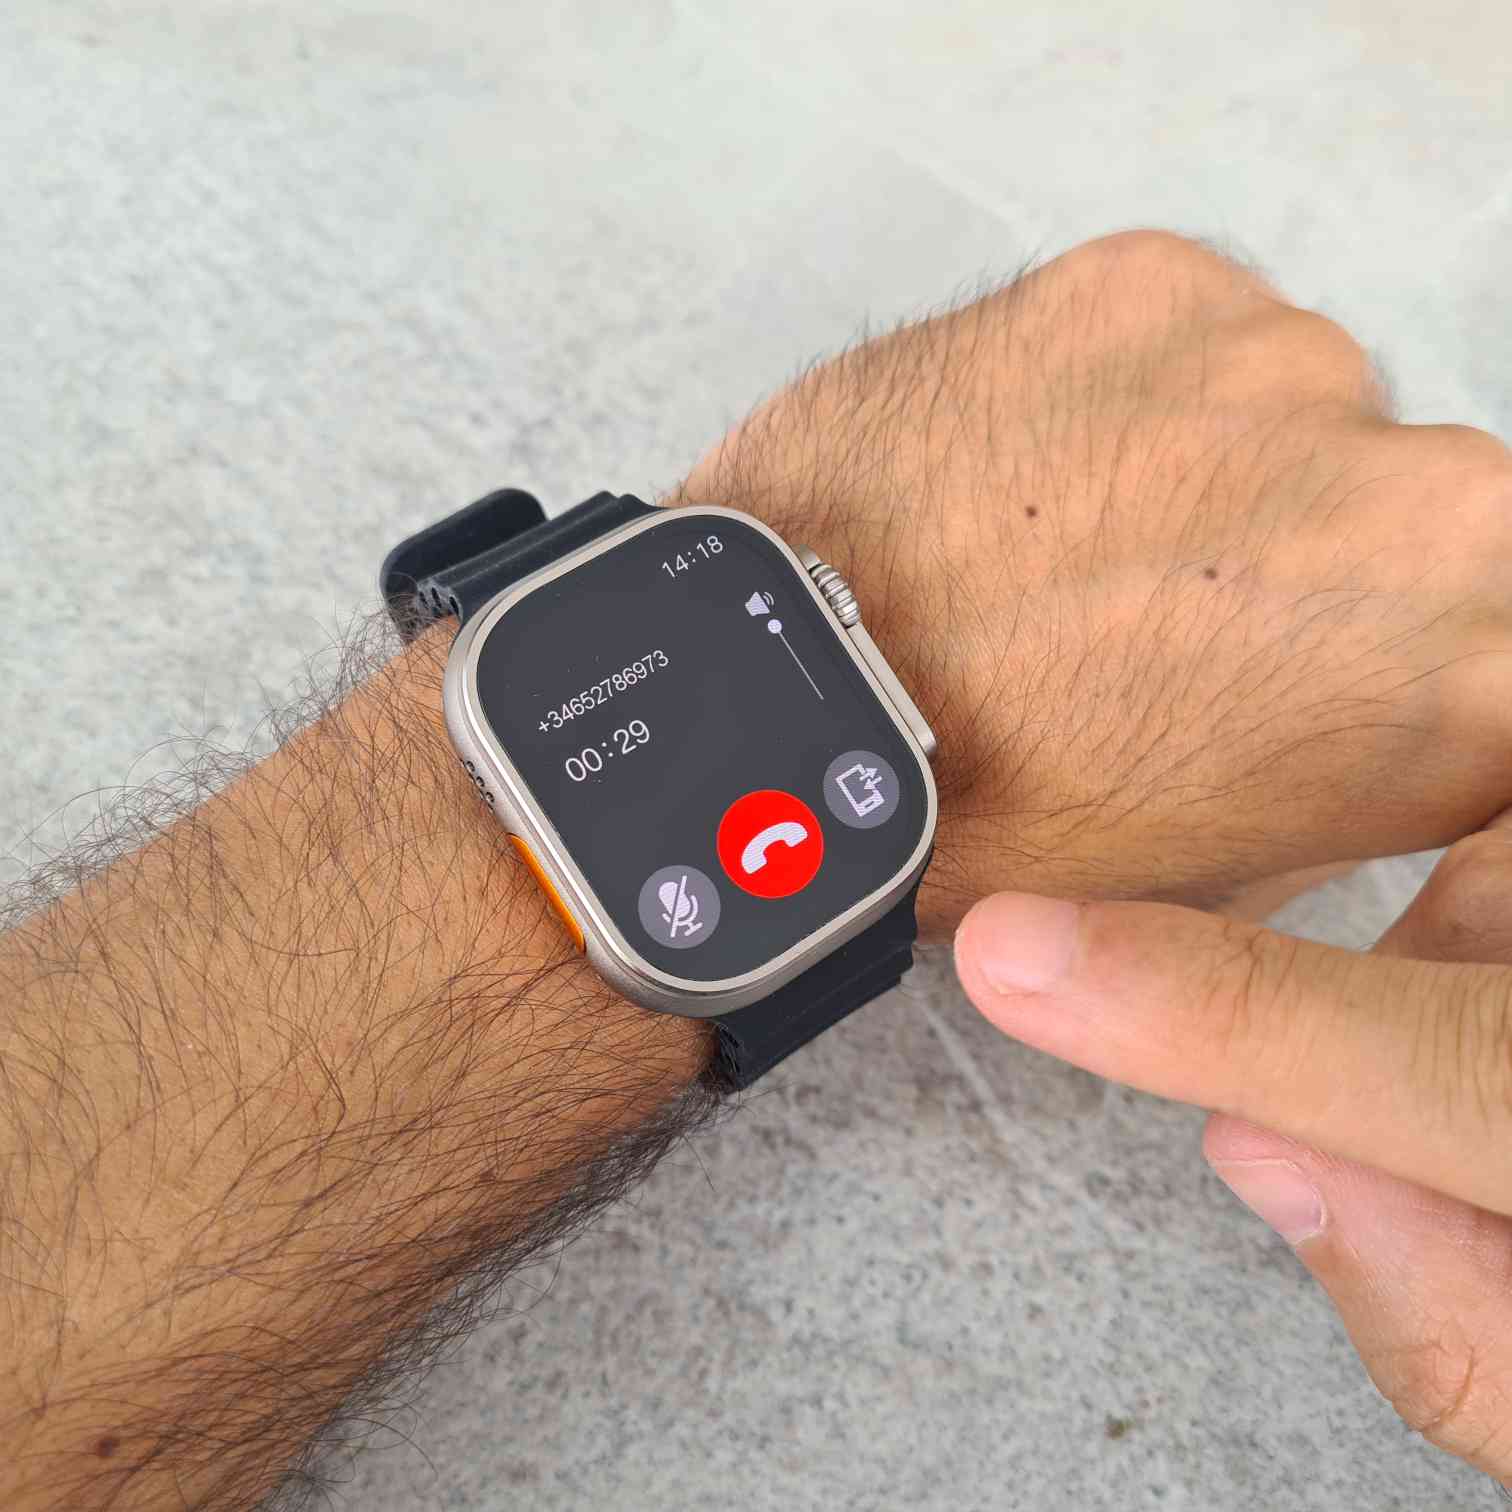 Hello Watch 3 Plus con pantalla AMOLED 4 GB de 2,04 pulgadas